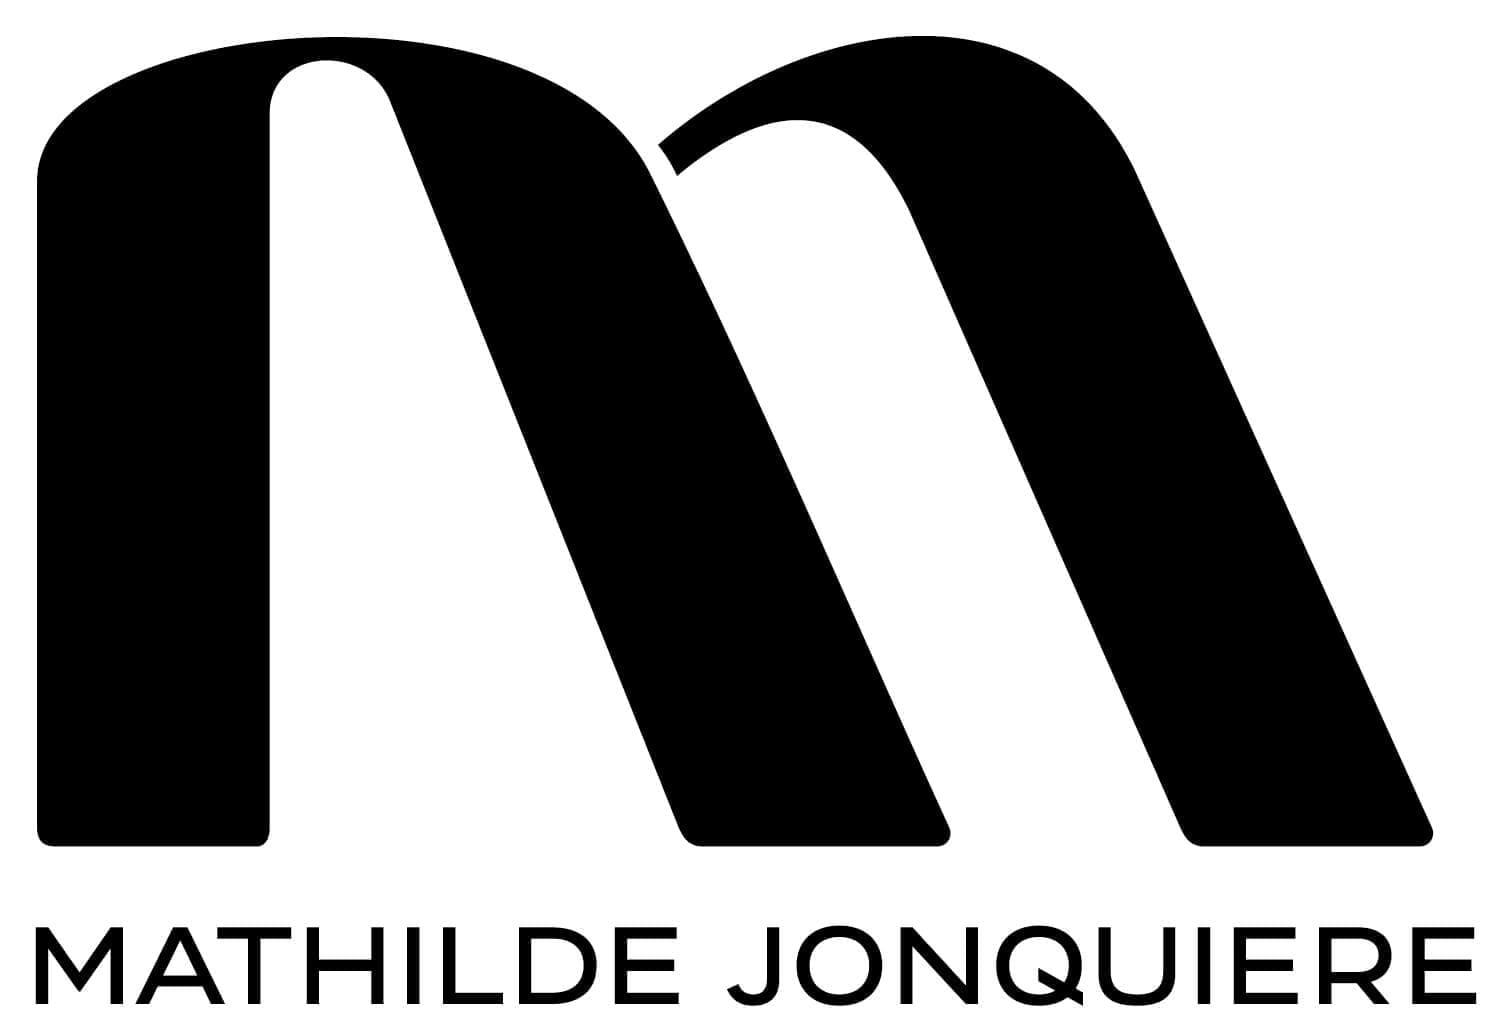 Le logotype de la mosaïste Mathilde Jonquière dessiné par IchetKar